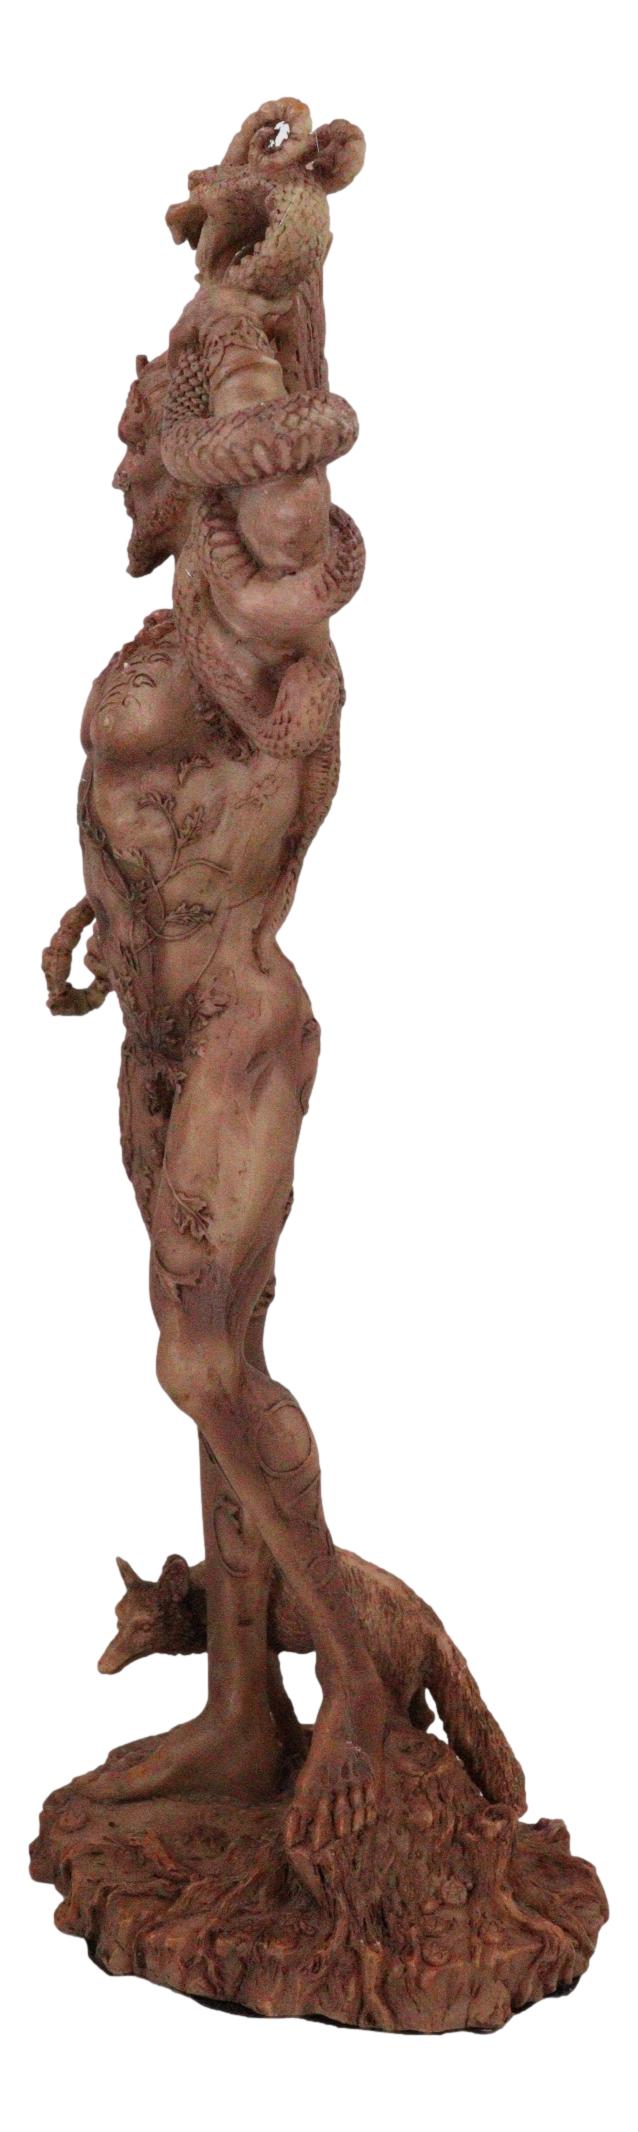 Celtic God Cernunnos Horned God Herne The Hunter Holding Serpent Figurine 9.5"H